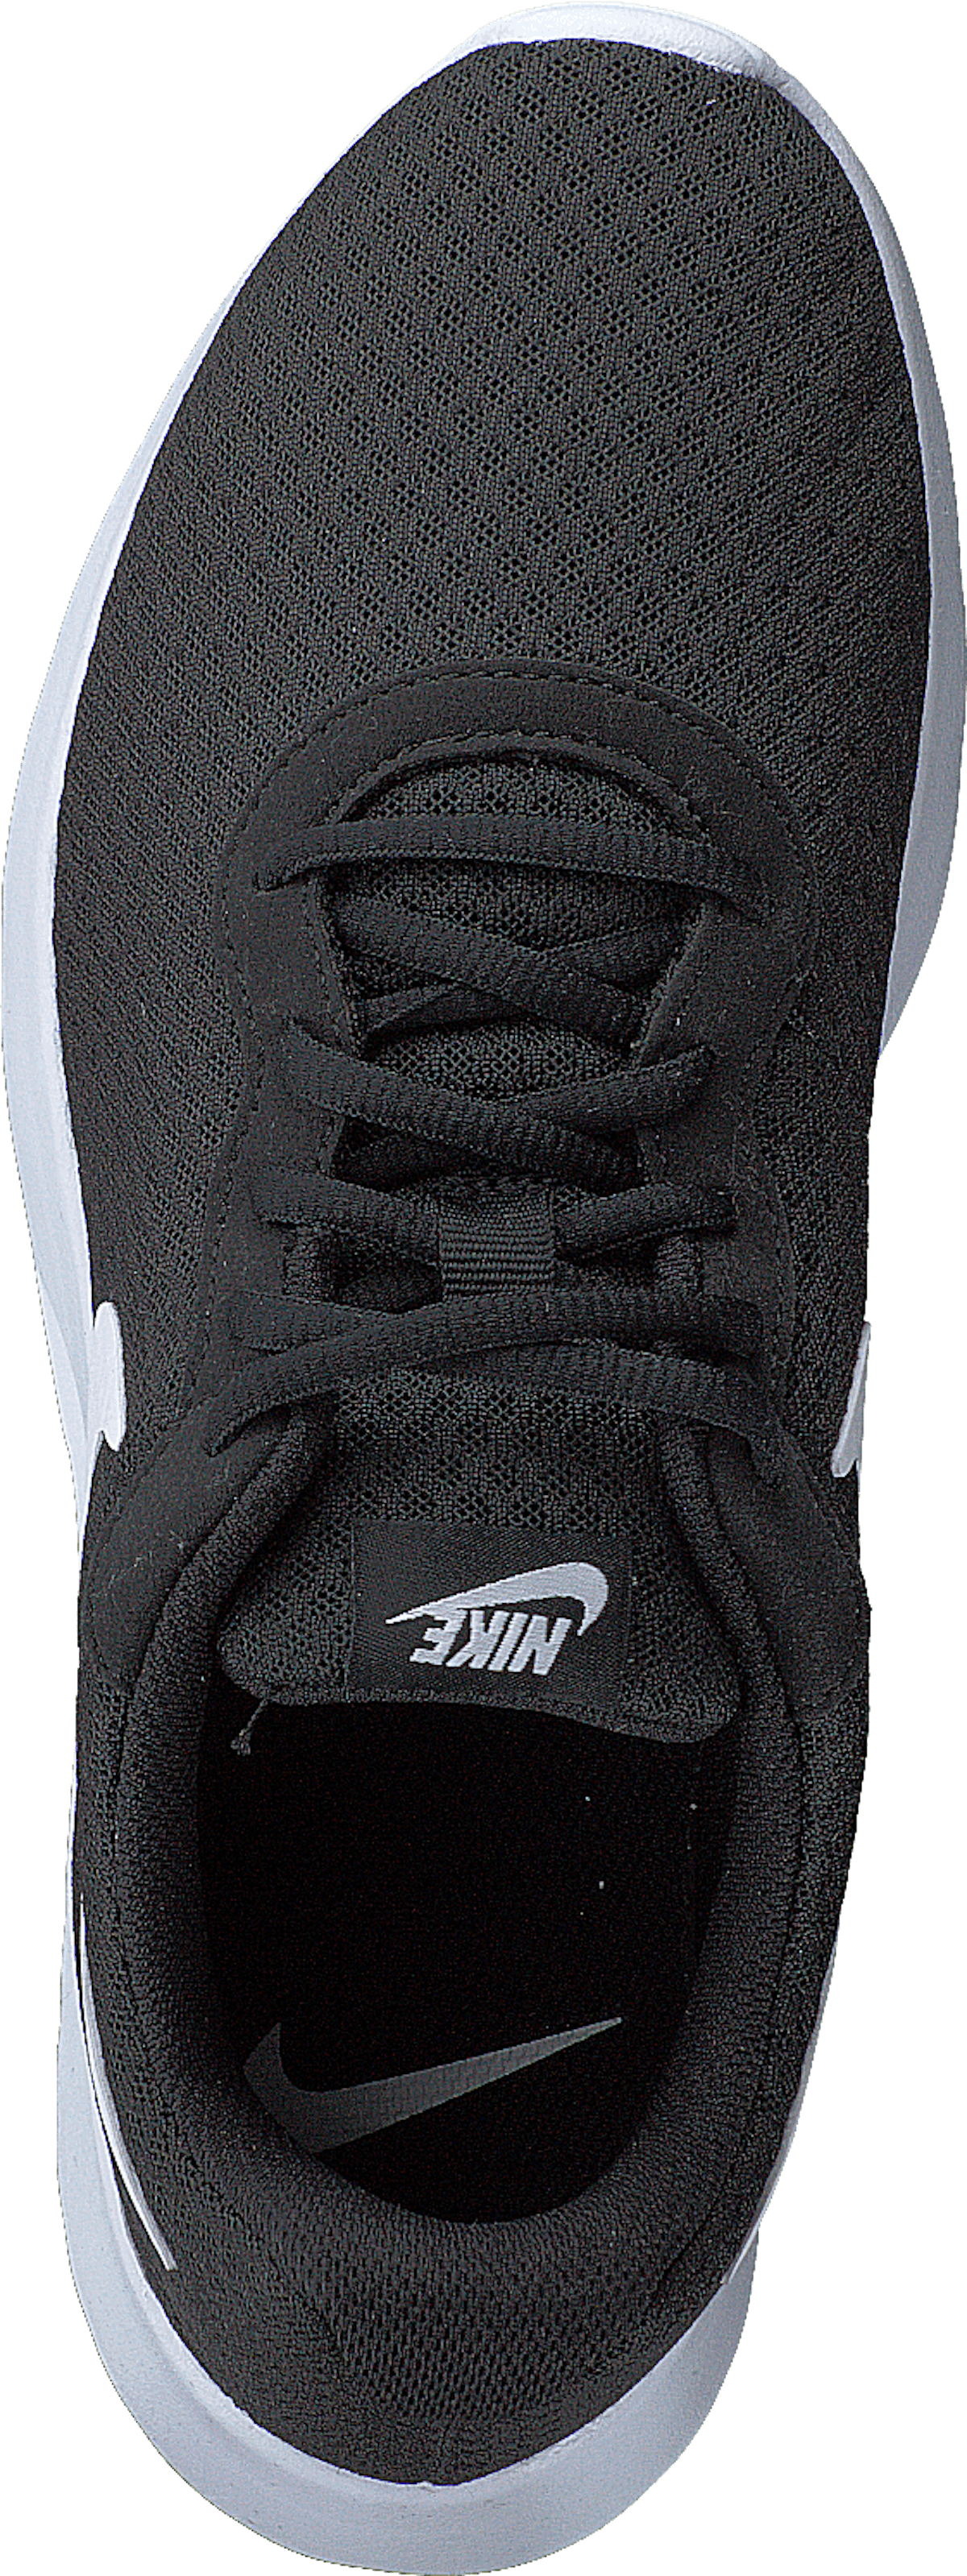 Nike Tanjun Black White